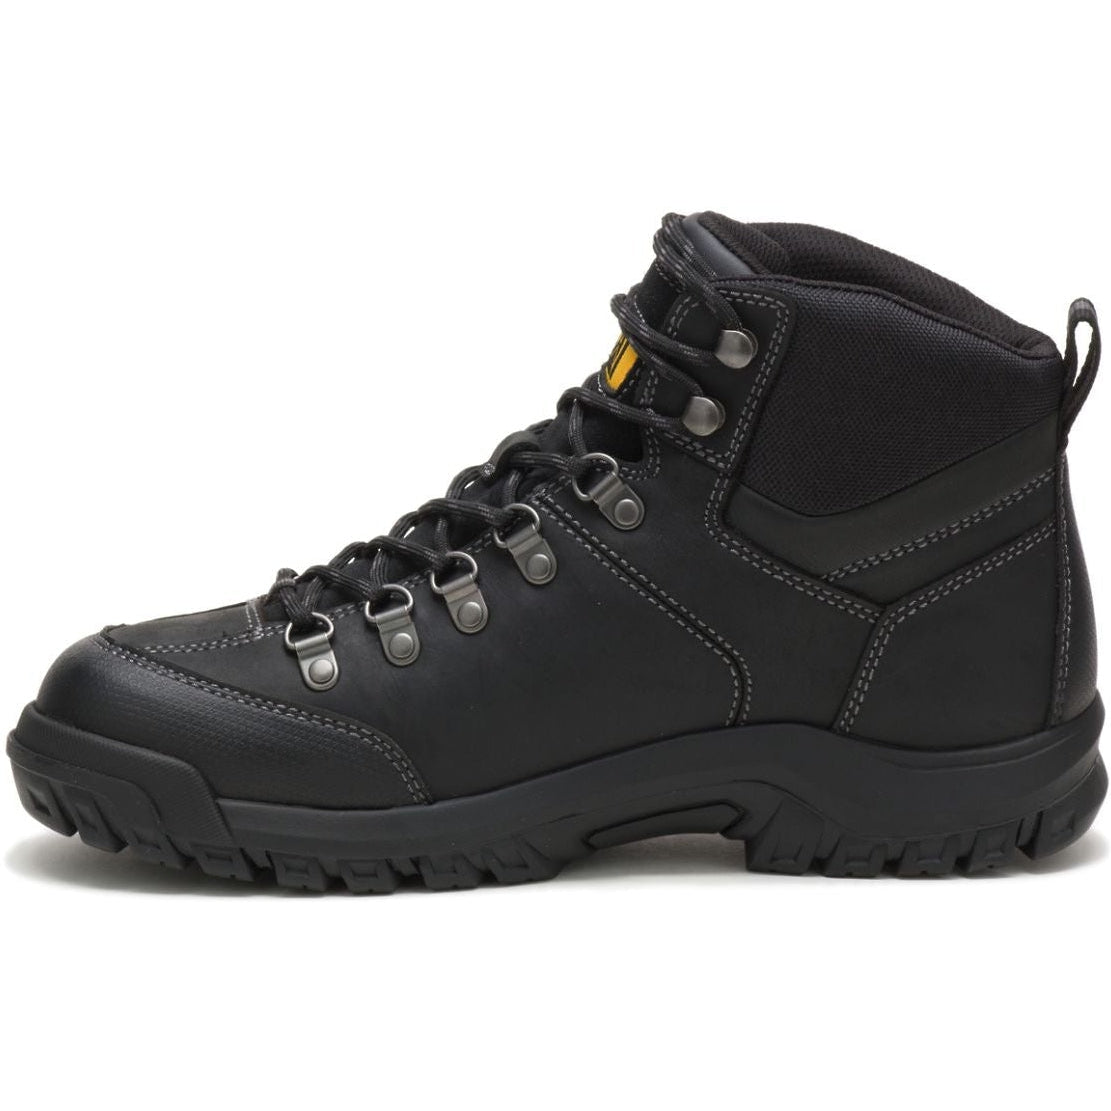 CAT Men's Threshold Waterproof Soft toe Work Boot - Black - P74129  - Overlook Boots